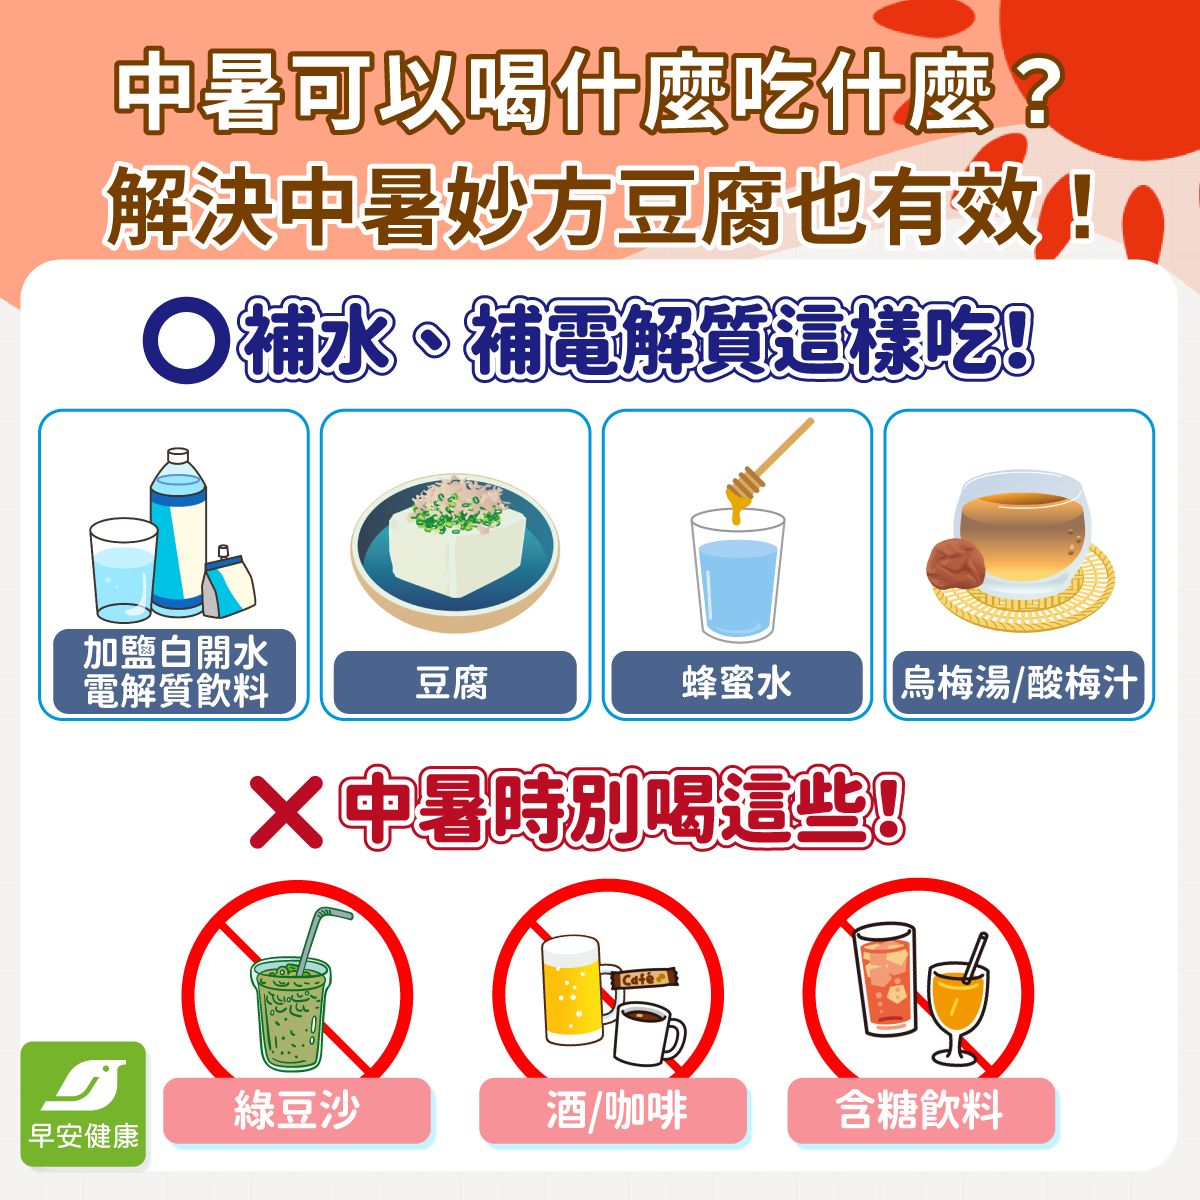 中暑喝什麼吃什麼？解除中暑症狀要幫身體補充水分與電解質，除了電解質飲料以外，也可以選擇豆腐、蜂蜜水來緩解中暑